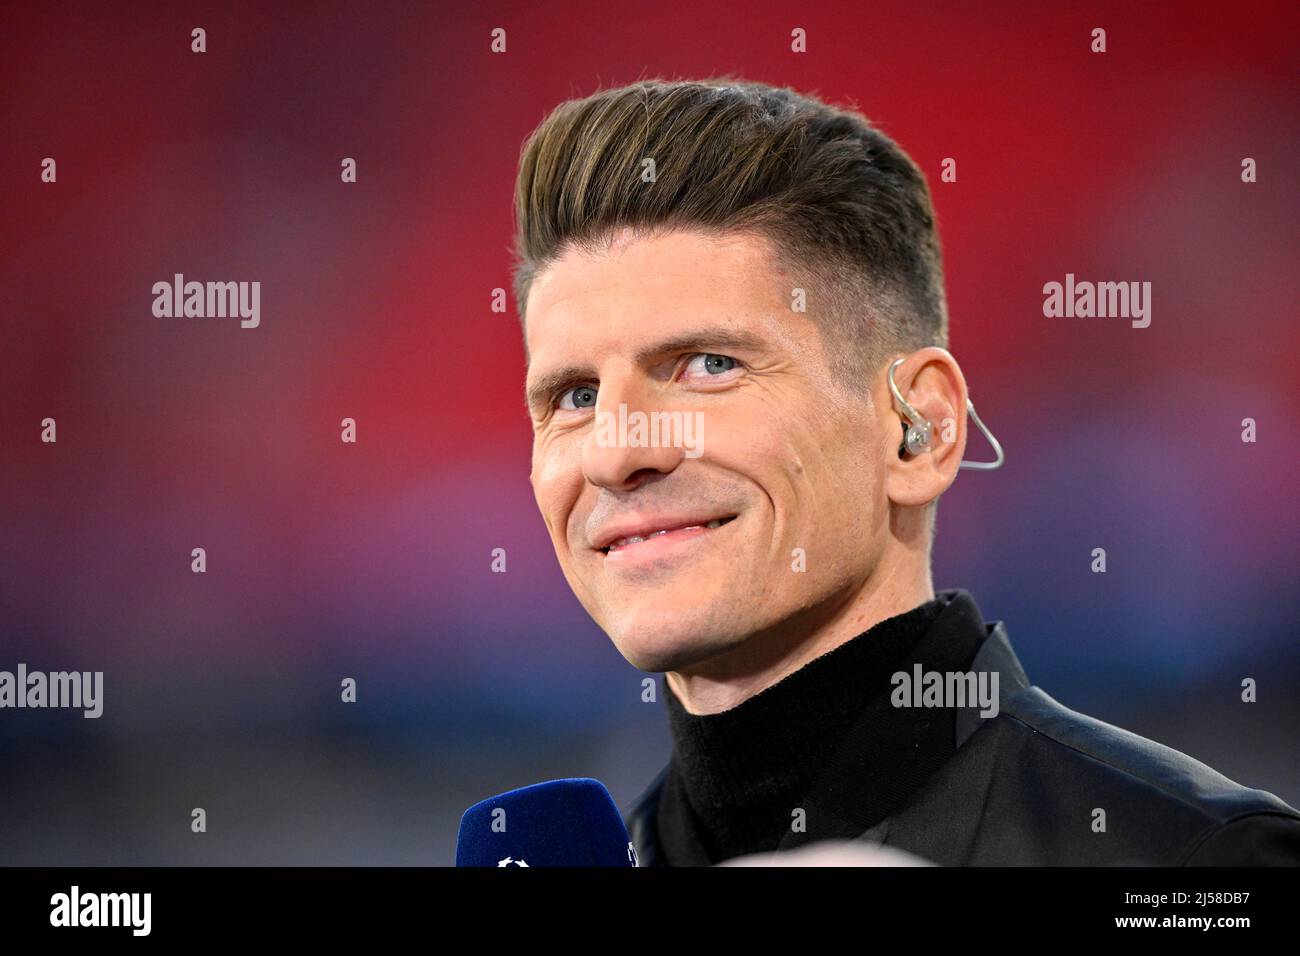 Mario Gomez, ehemaliger Nationalspieler, TV-Experte im Interview, Portrait, Champions League, Allianz Arena, Muenchen, Bayern, Deutschland Stock Photo